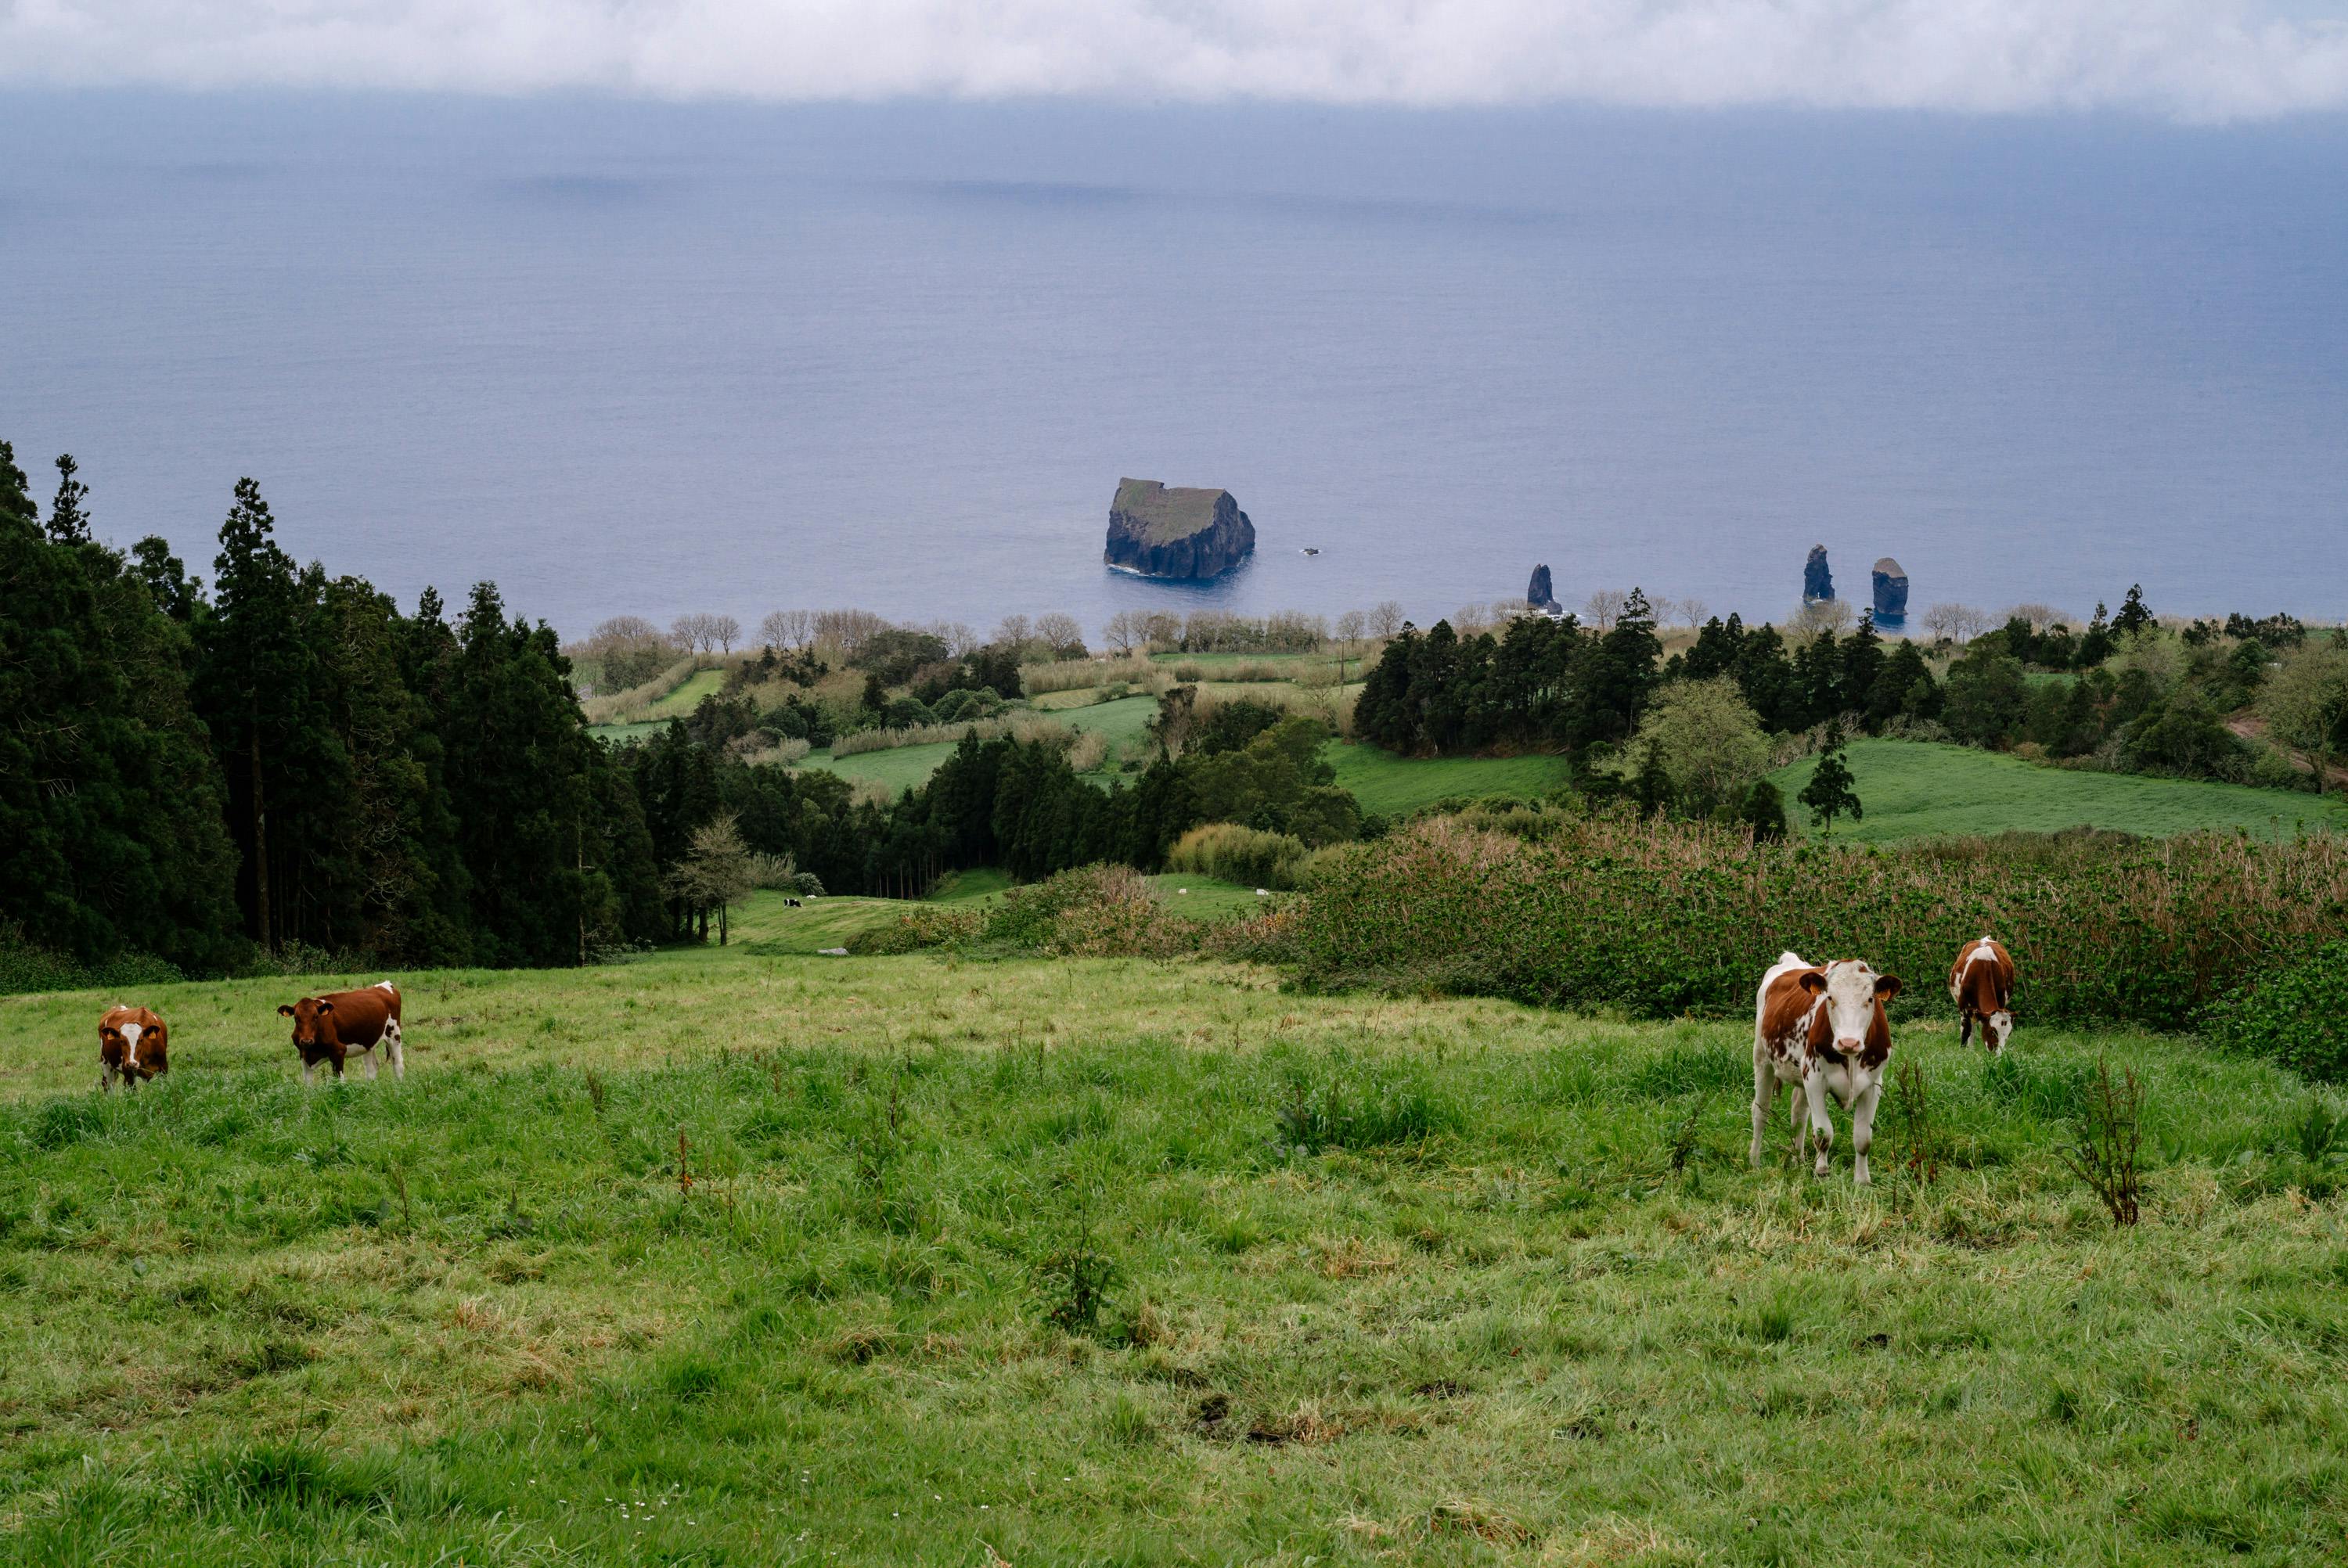 Azores, Mid-Atlantic